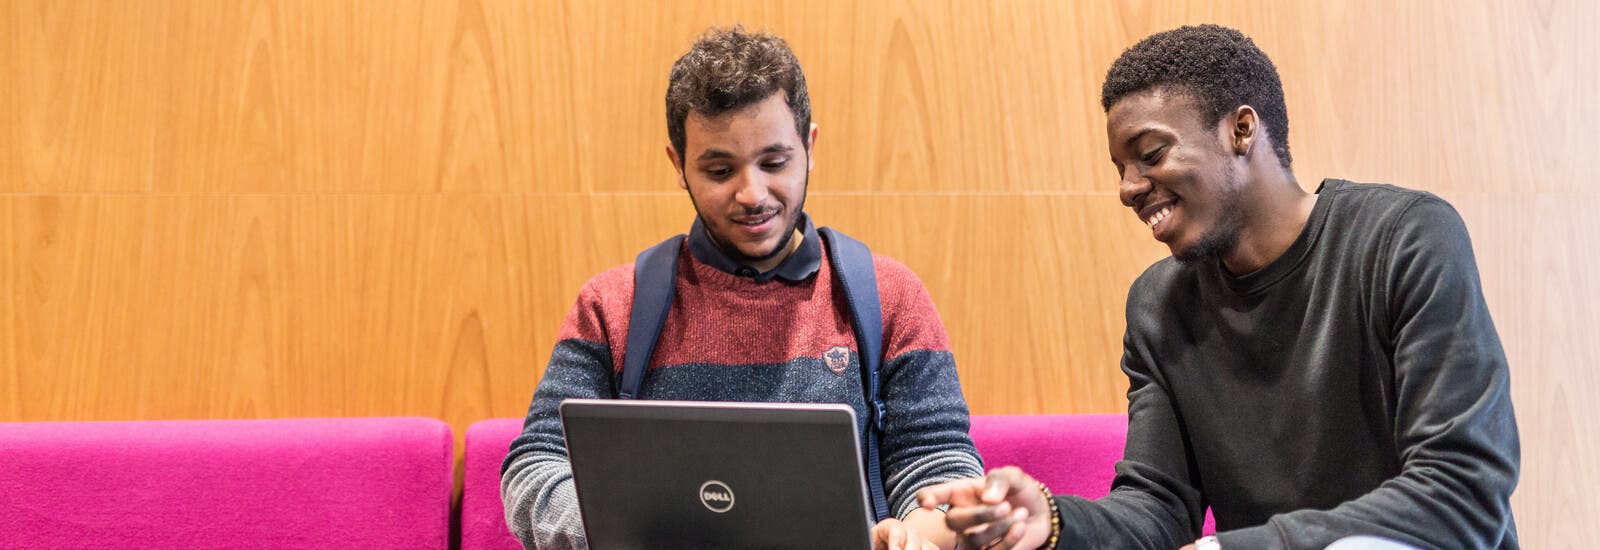 两名利物浦约翰摩尔斯大学的学生正在使用一台笔记本电脑。